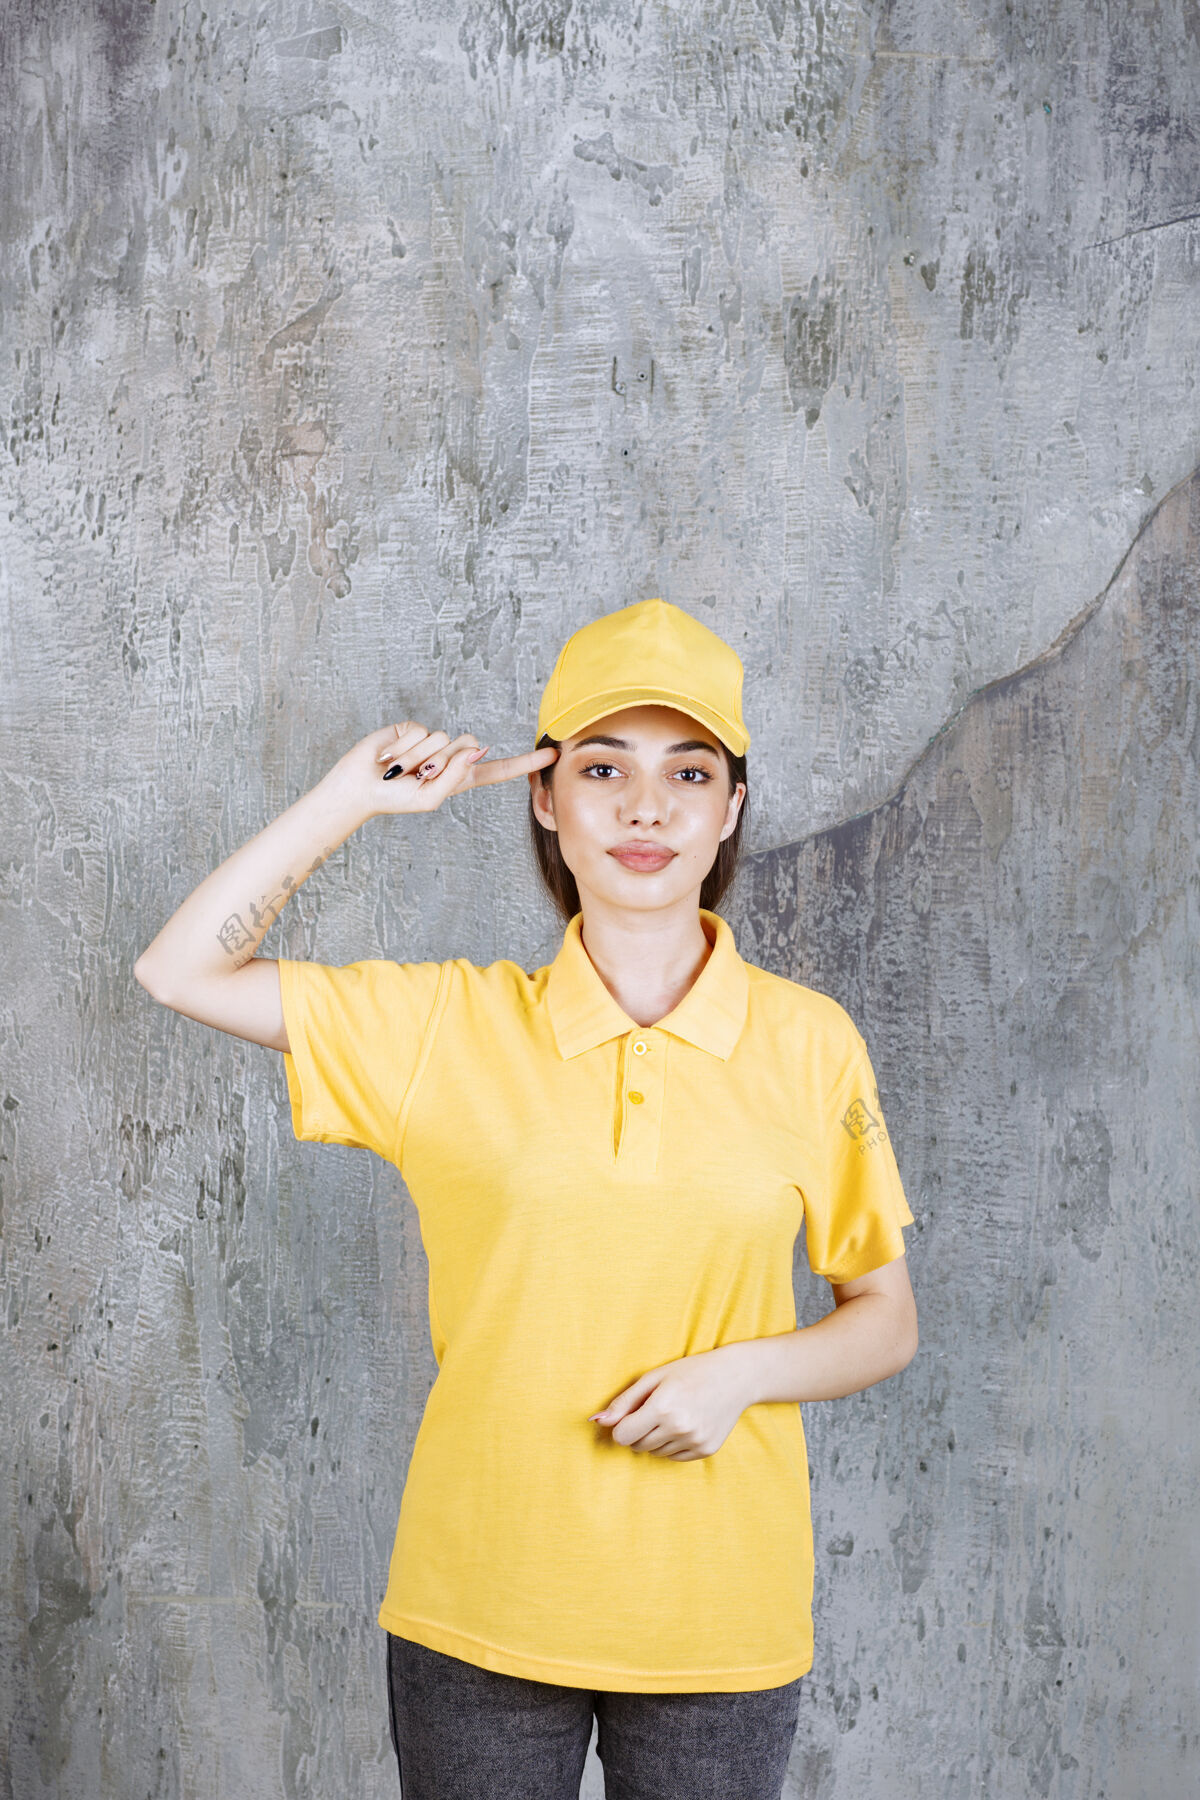 成年人身着黄色制服的女服务人员站在水泥墙上 看上去很体贴快递员工人姿势